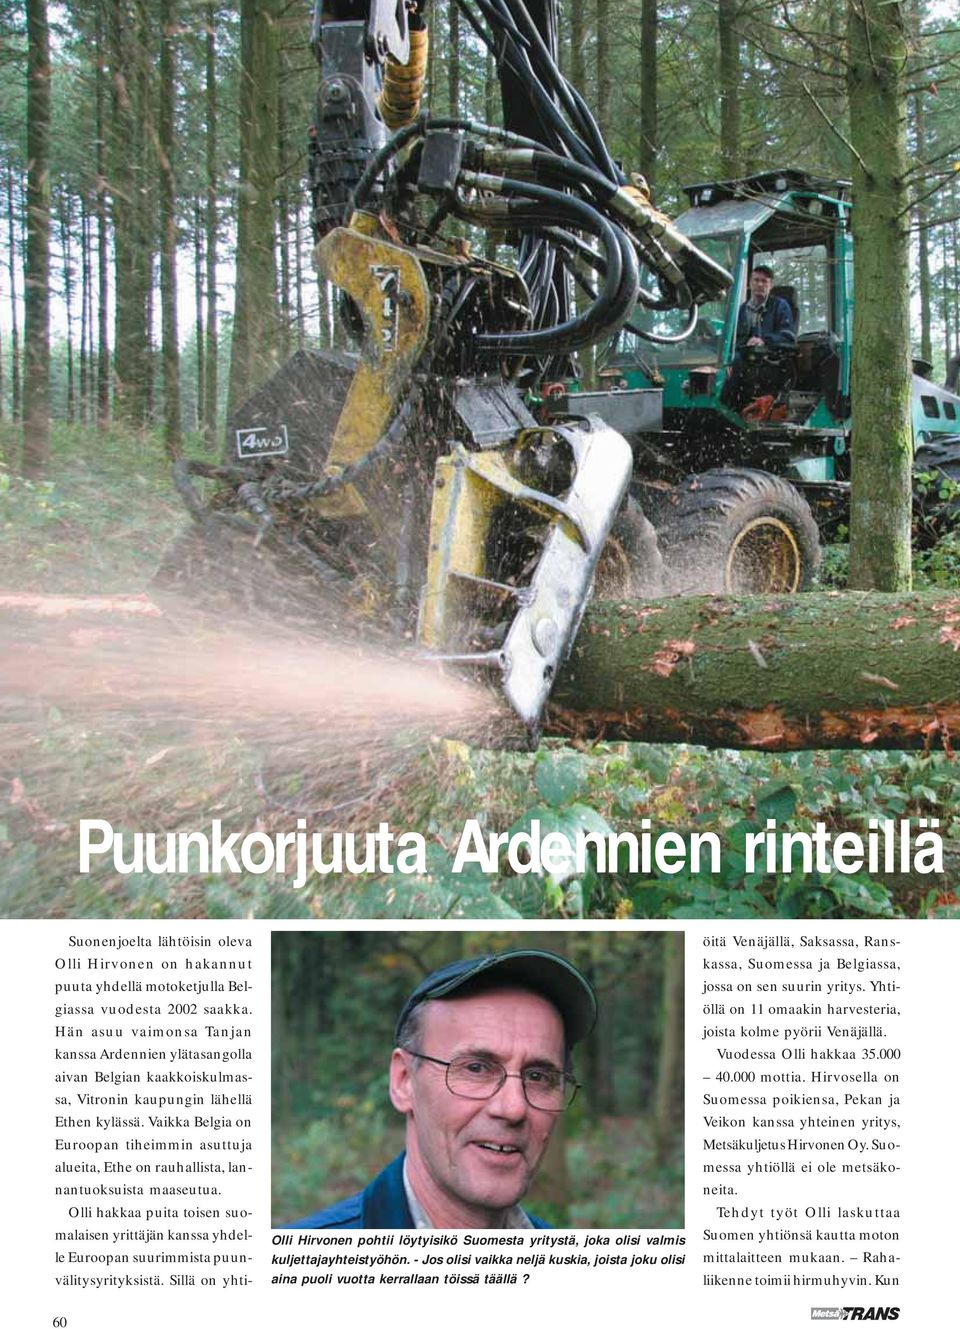 Suonenjoelta lähtöisin oleva Olli Hirvonen on hakannut puuta yhdellä motoketjulla Belgiassa vuodesta 2002 saakka.